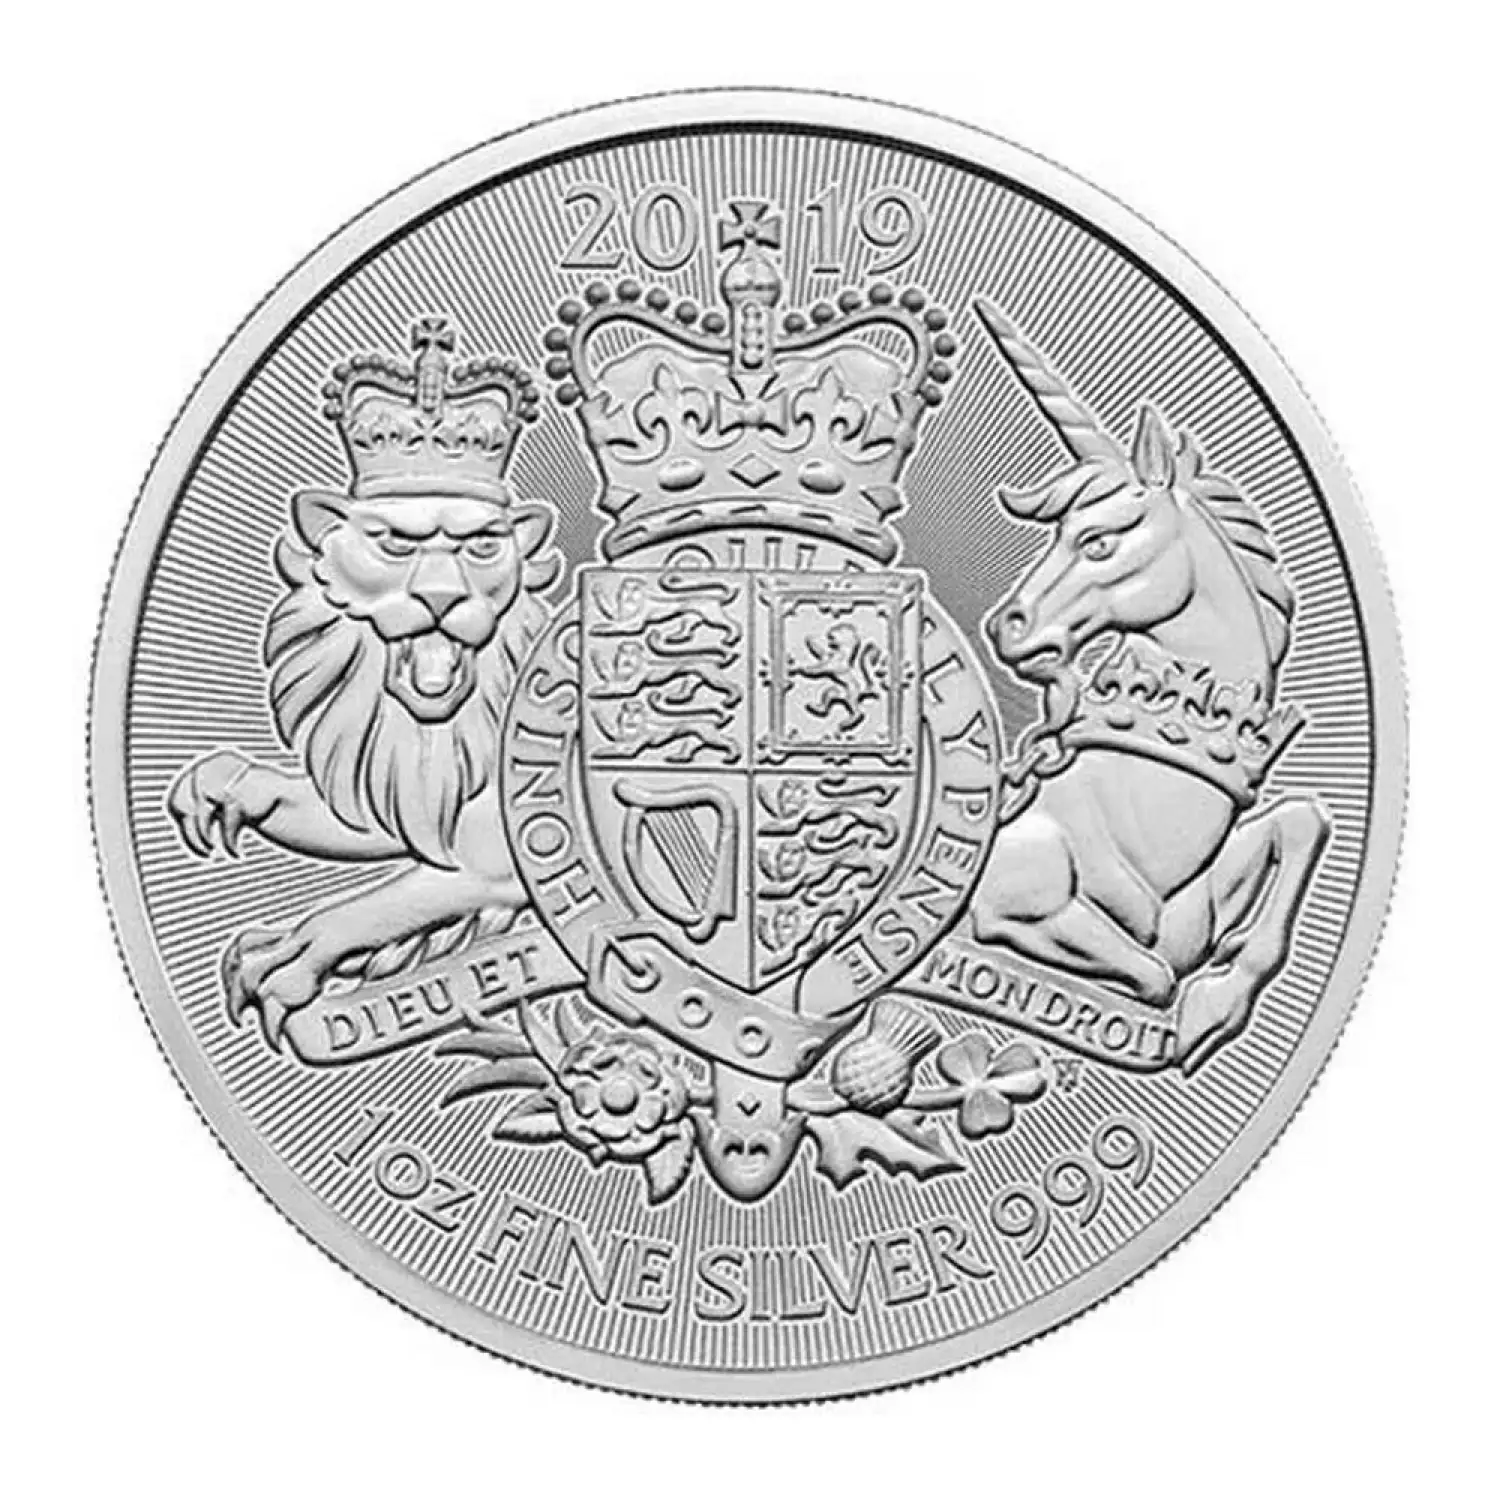 2019 1oz British Royal Arms Silver Coin (2)